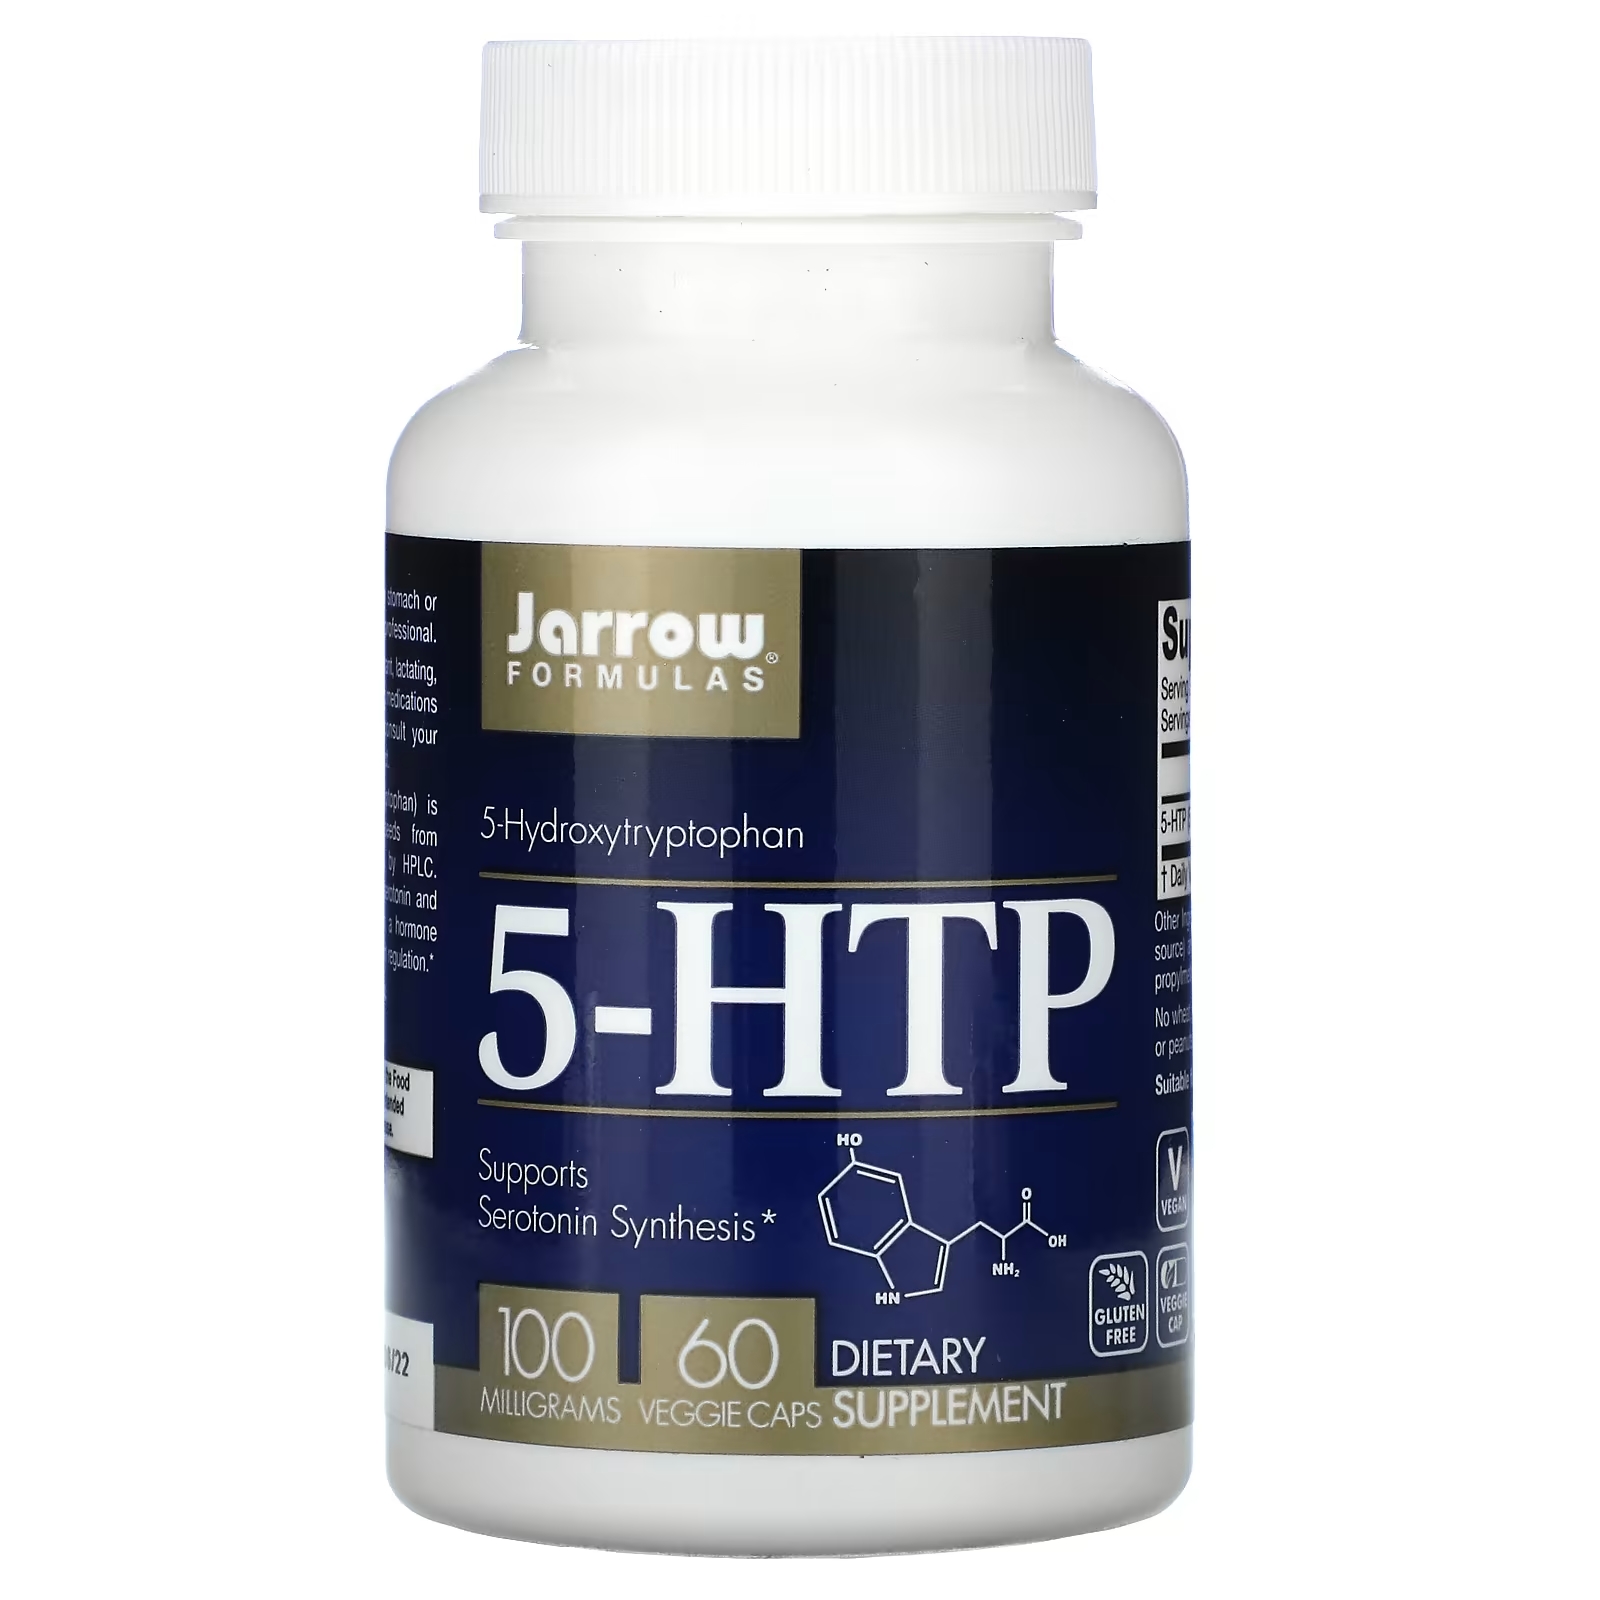 Jarrow Formulas 5-гидрокситриптофан 100 мг, 60 вегетарианских капсул jarrow formulas ресвератрол 100 мг 60 вегетарианских капсул